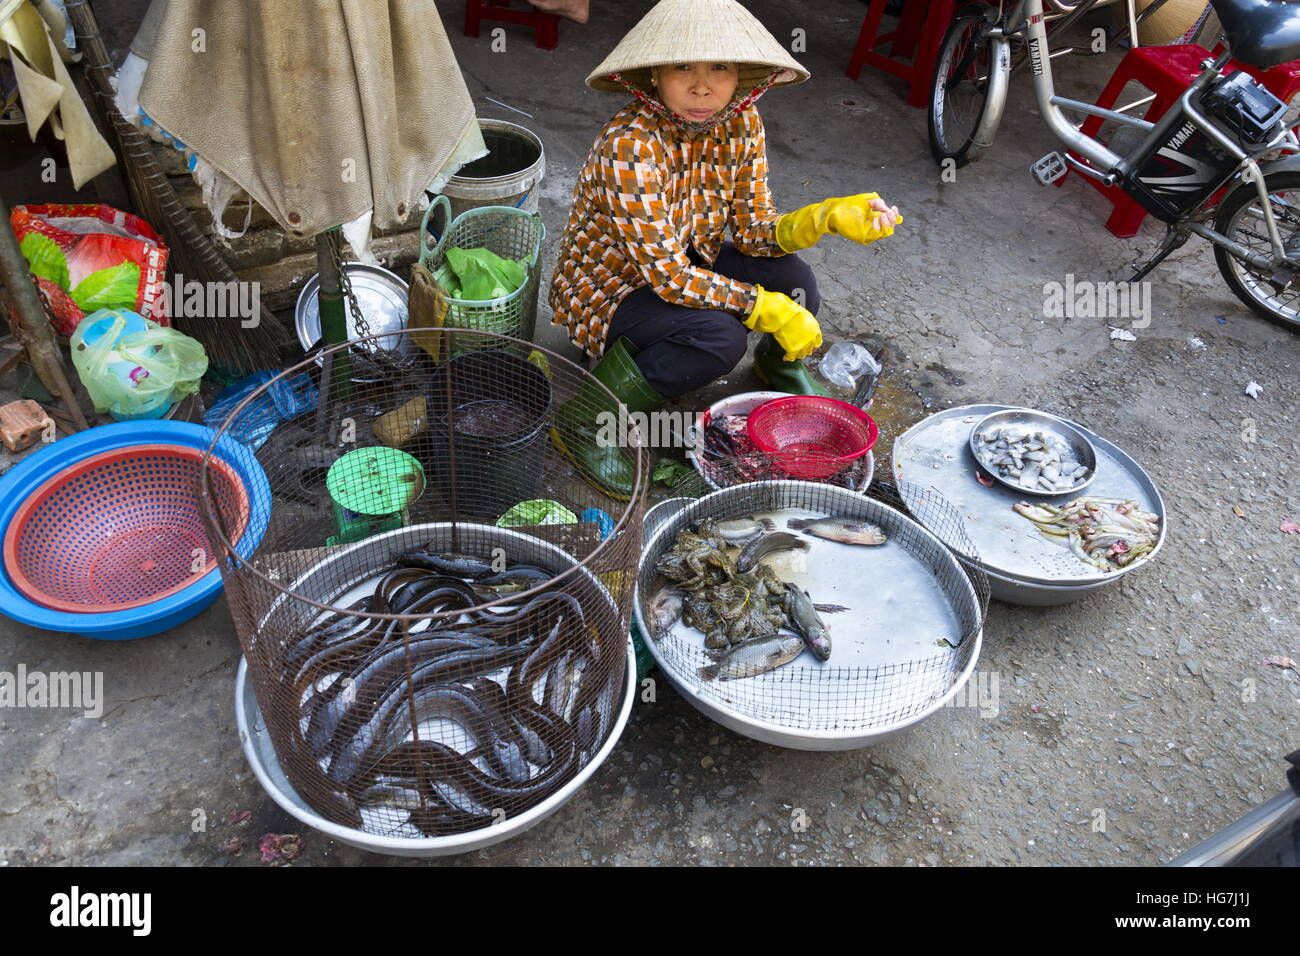 MY THO, VIETNAM - Februar 15: Frau verkauft Fisch auf Flohmarkt am 15. Februar 2012 in My Tho, Vietnam. Stockfoto